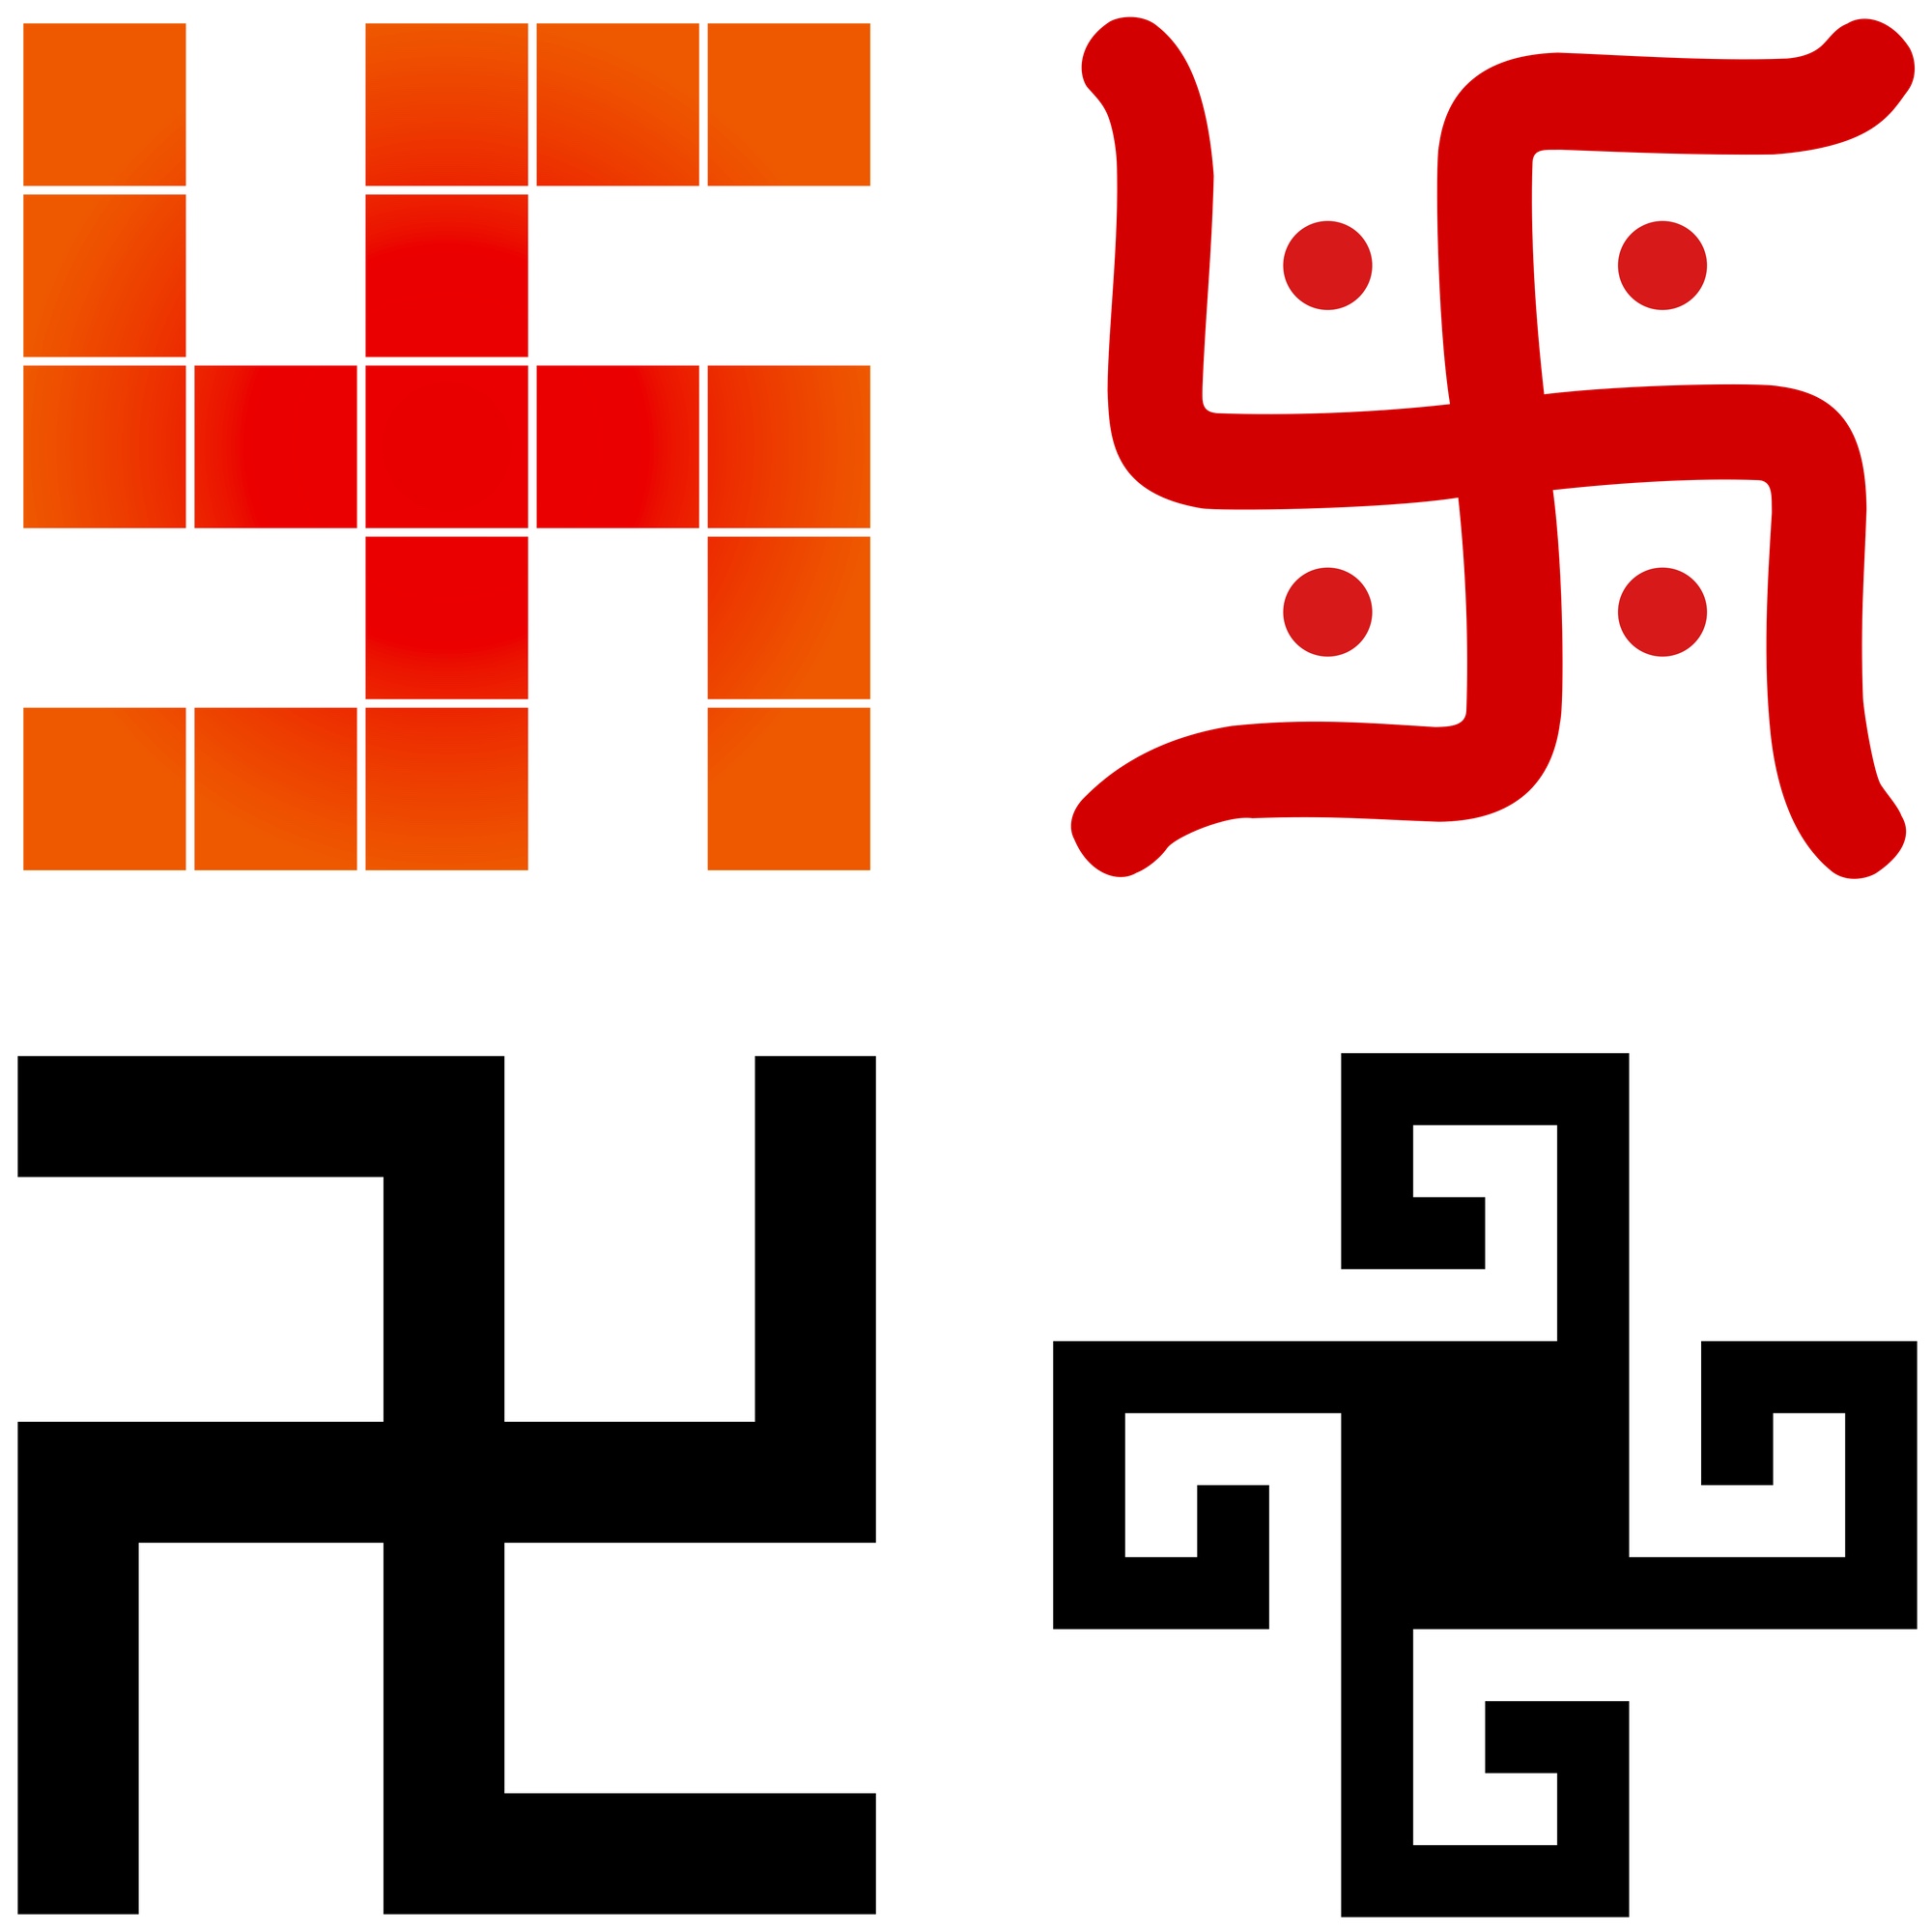 Bild: Collage mit vier verschiedenen Swastikas